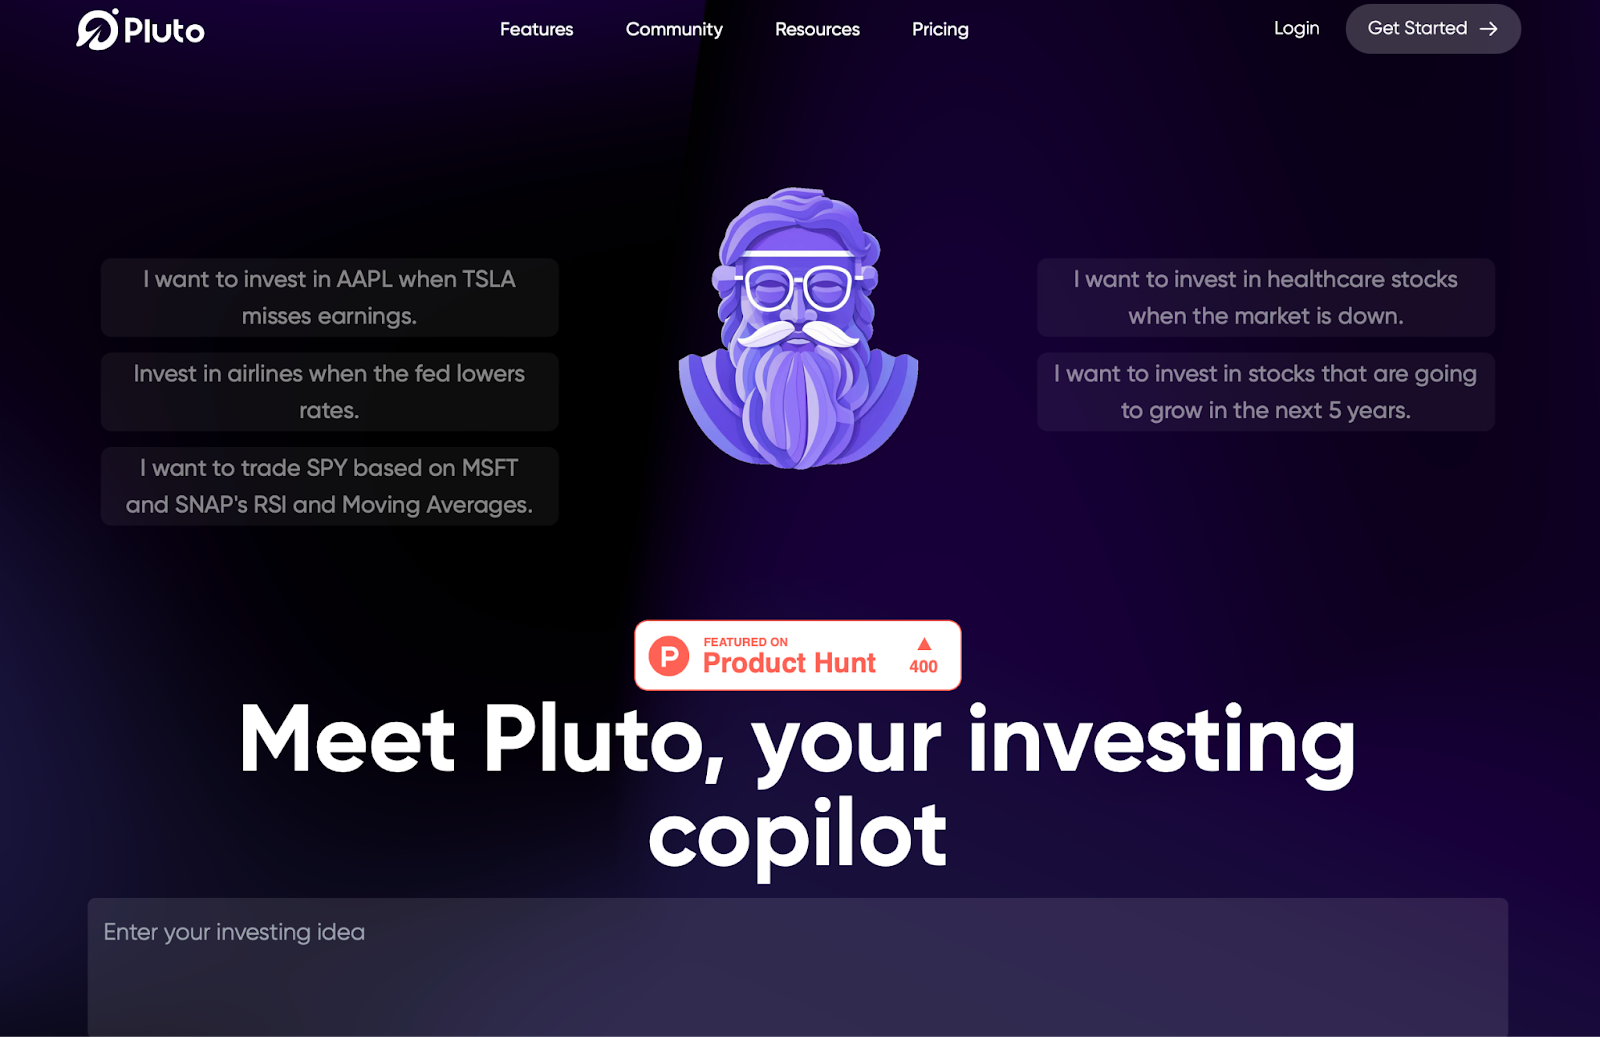 Plutón es un copiloto de inversiones impulsado por IA